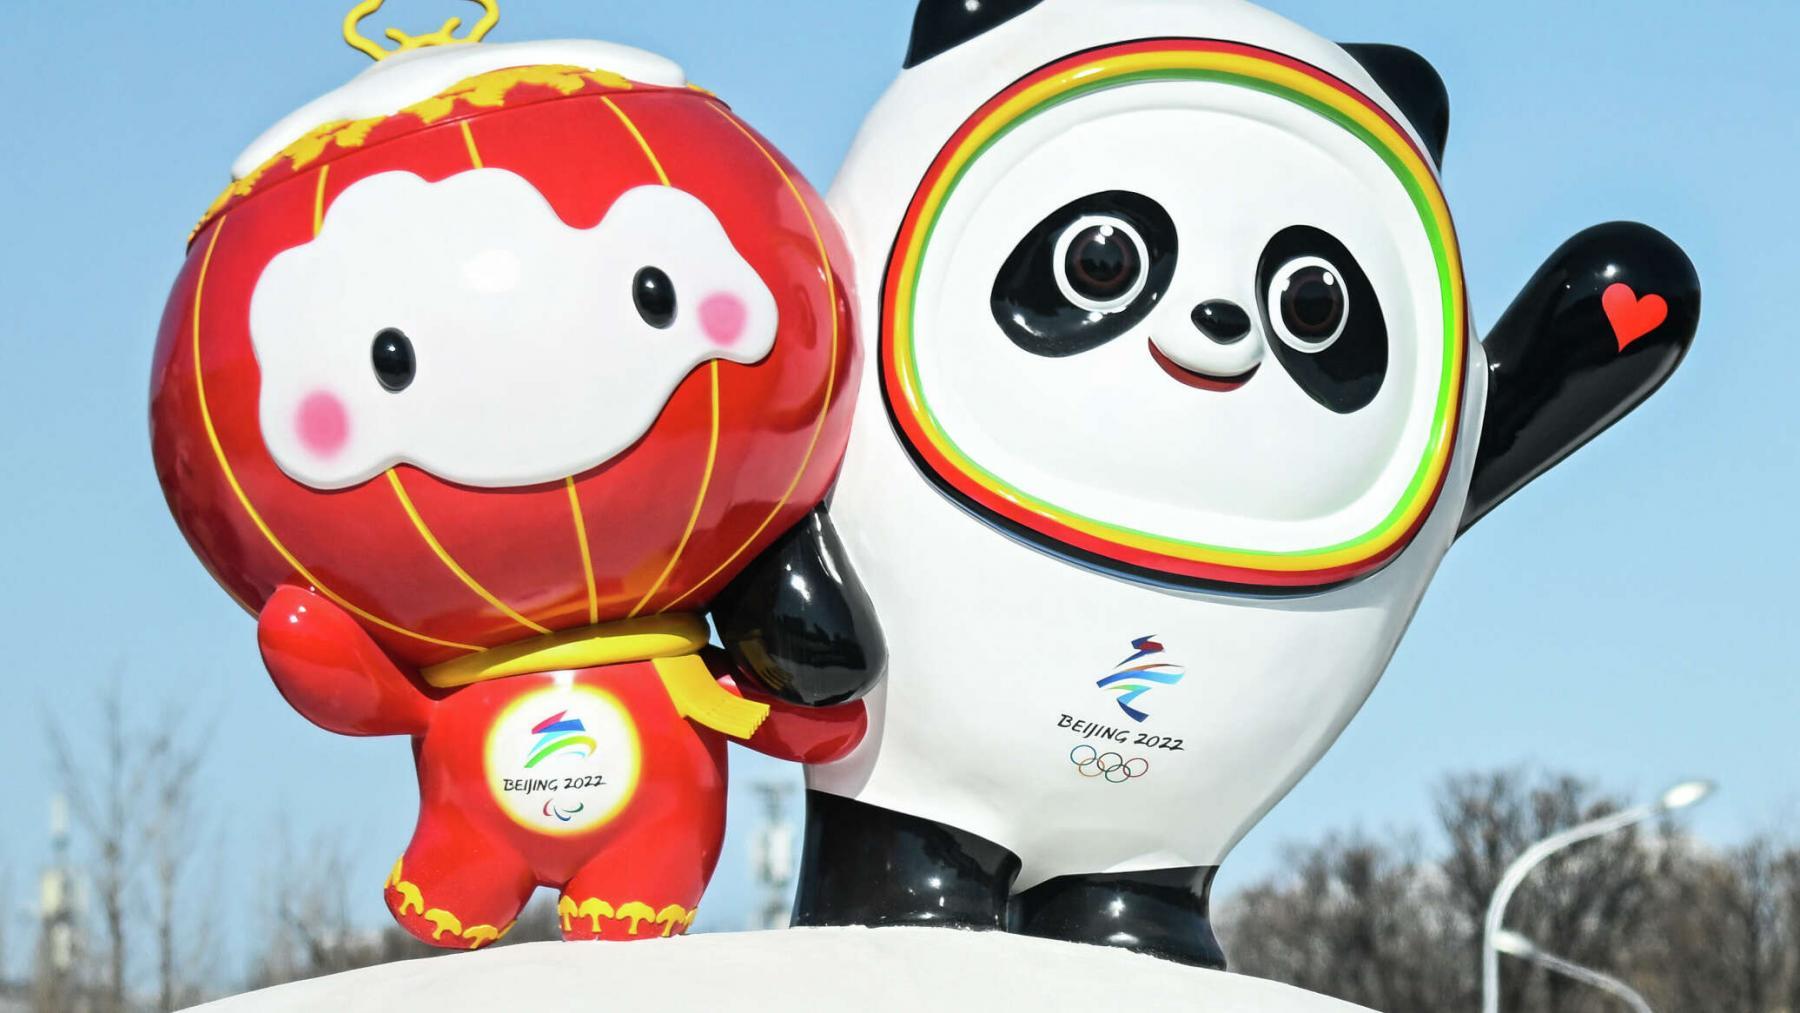 Фото Сборная России вышла вперёд по количеству медалей на Олимпиаде-2022 в Пекине 2